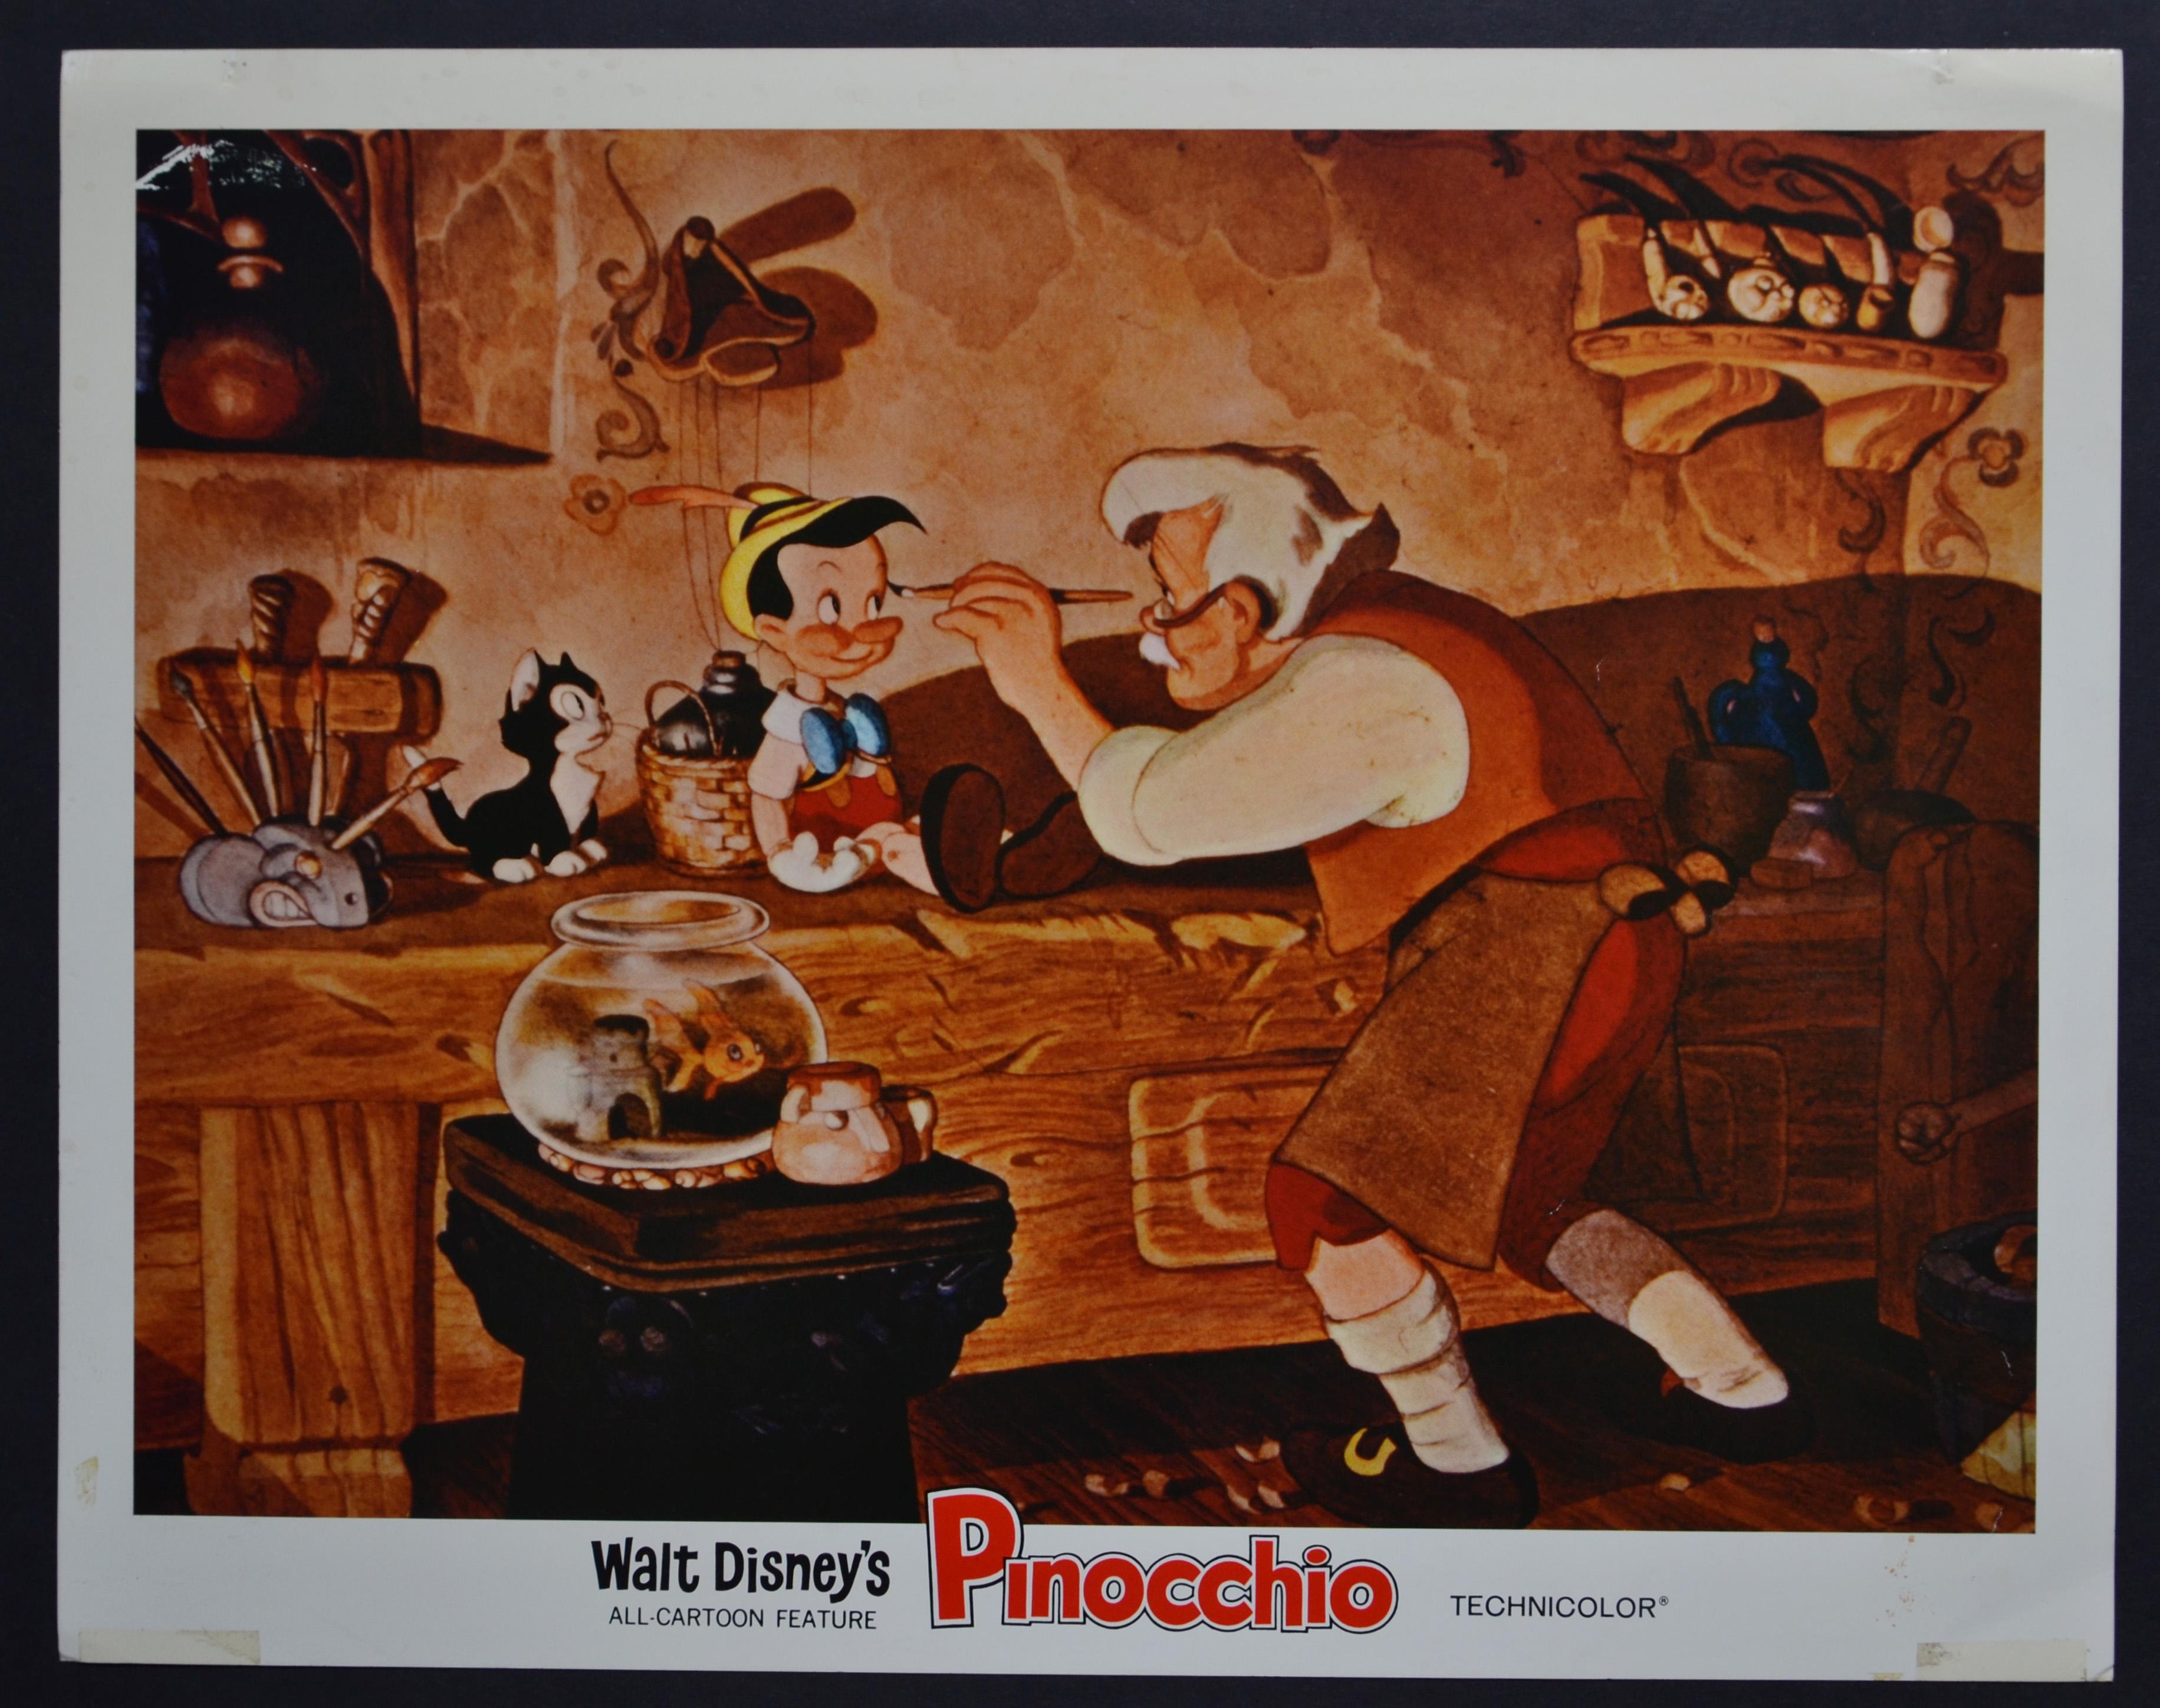 Unknown Interior Print – Original amerikanische Pinocchio-Lobby-Karte von Walt Disneys Film, USA 1940.